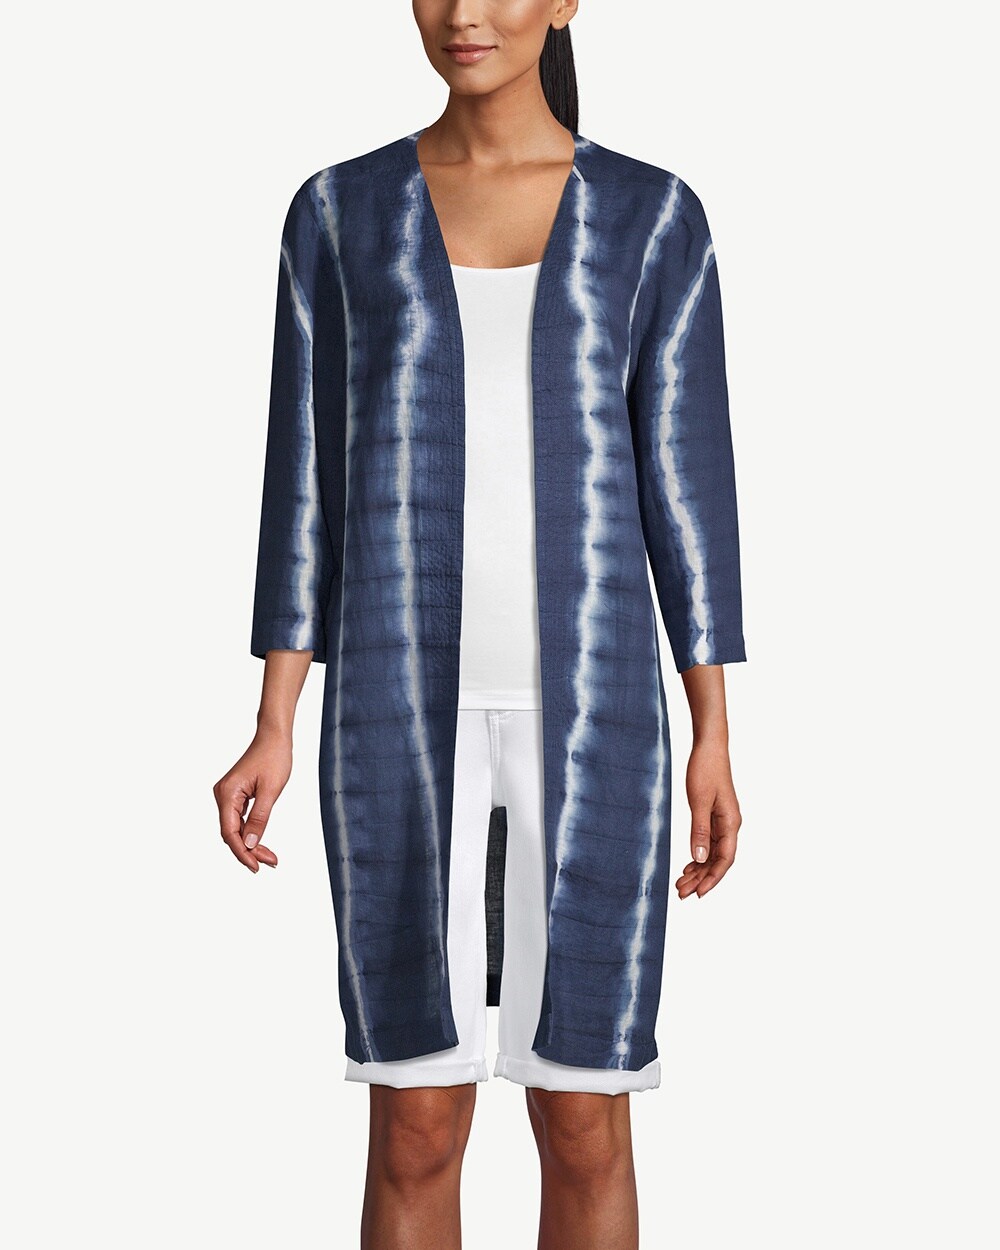 Indigo Tie-Dye Kimono Jacket